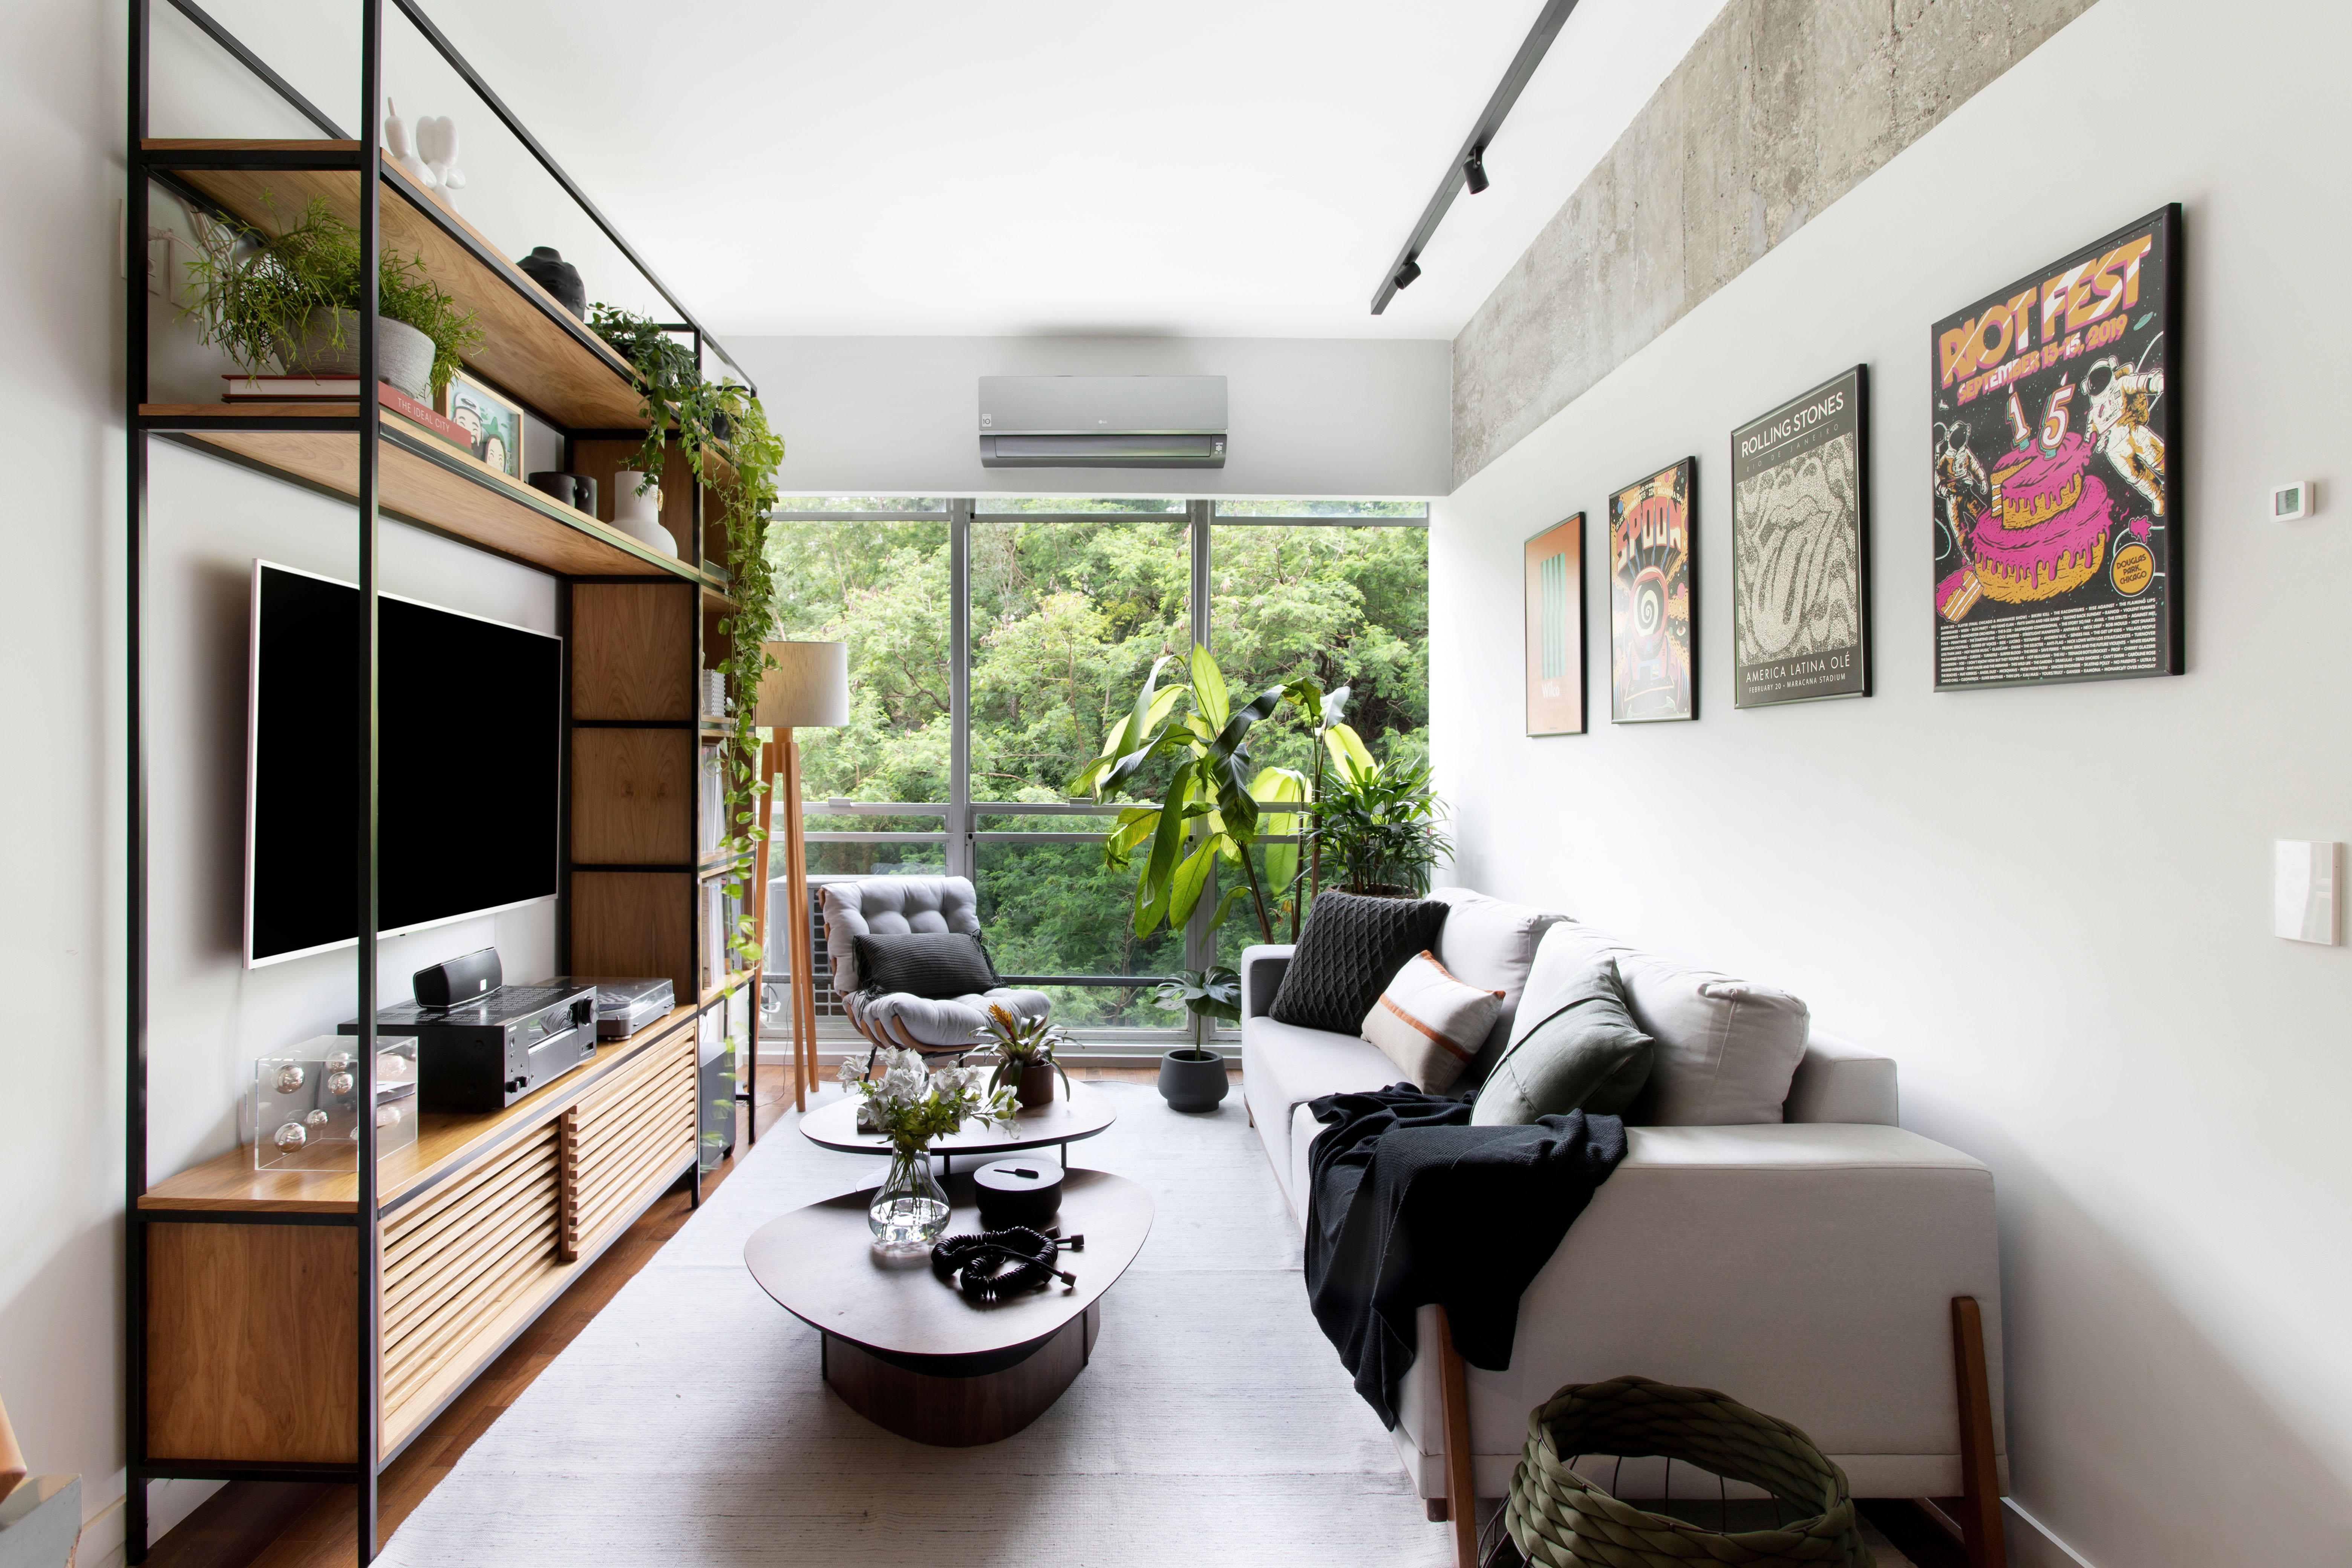  Industrielt: 80 m² lejlighed har en sort og grå palet, plakater og integration